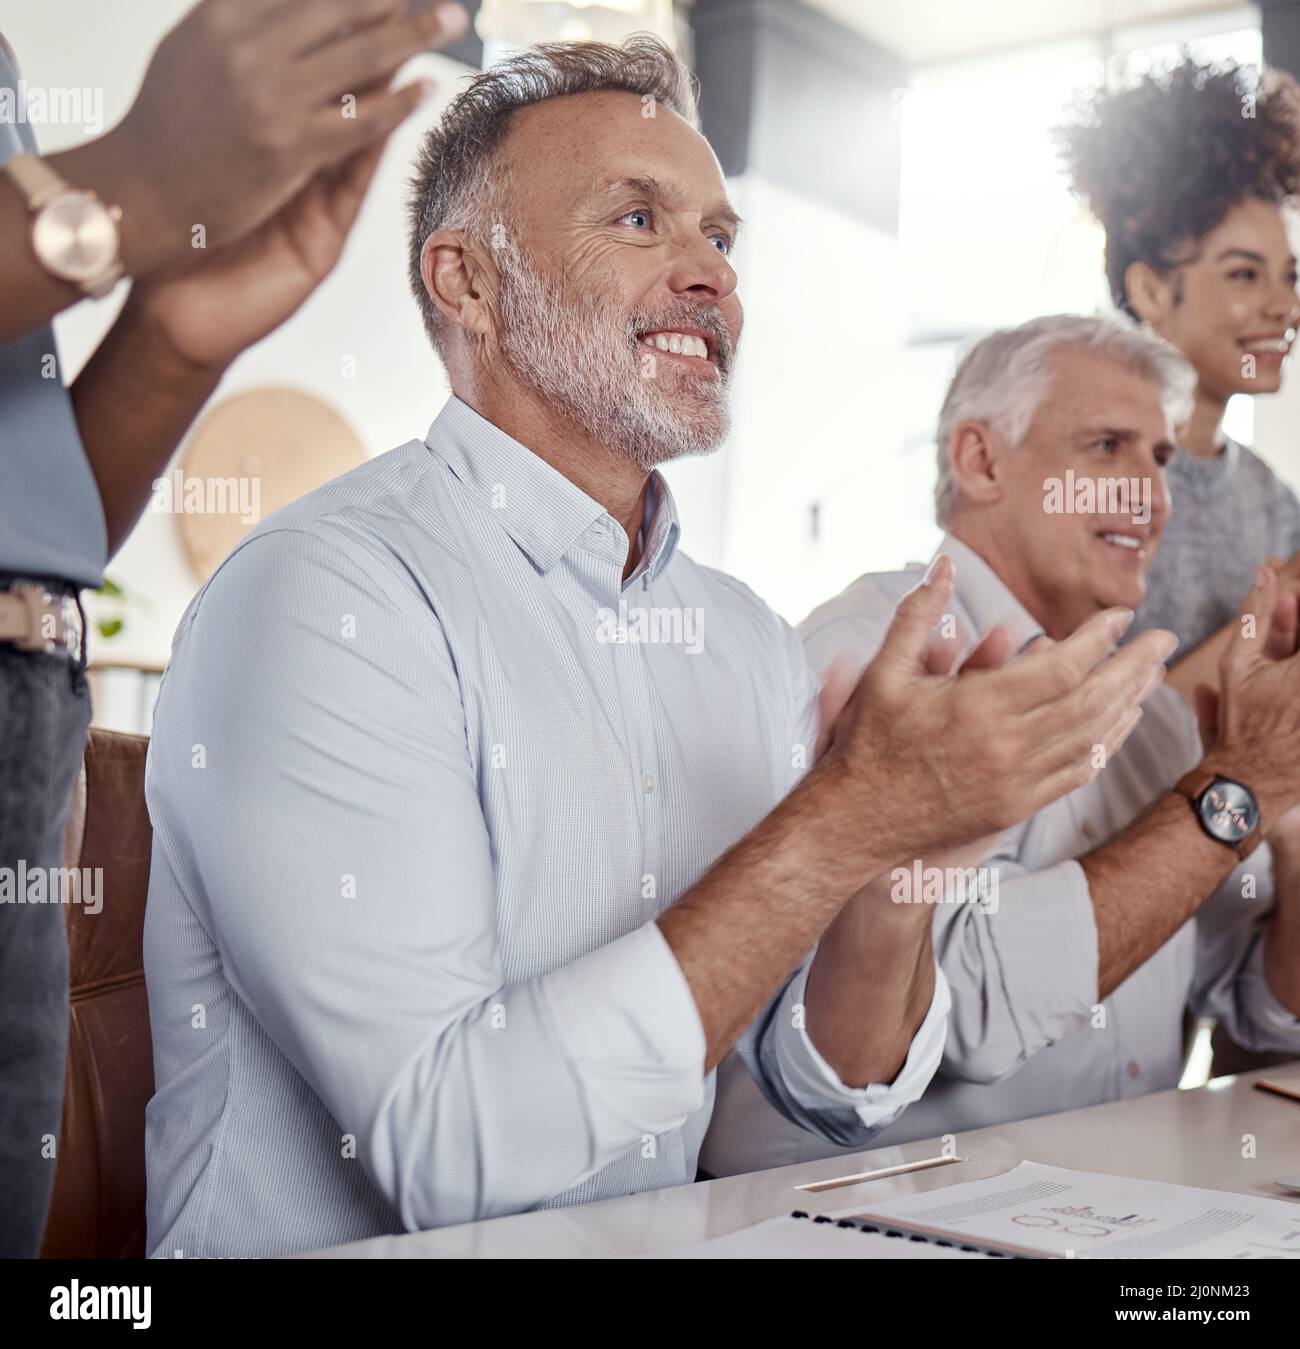 Un bénéfice accru mérite un bravo. Photo d'un groupe de personnes en voyage d'affaires qui claque lors d'une conférence dans un bureau moderne. Banque D'Images